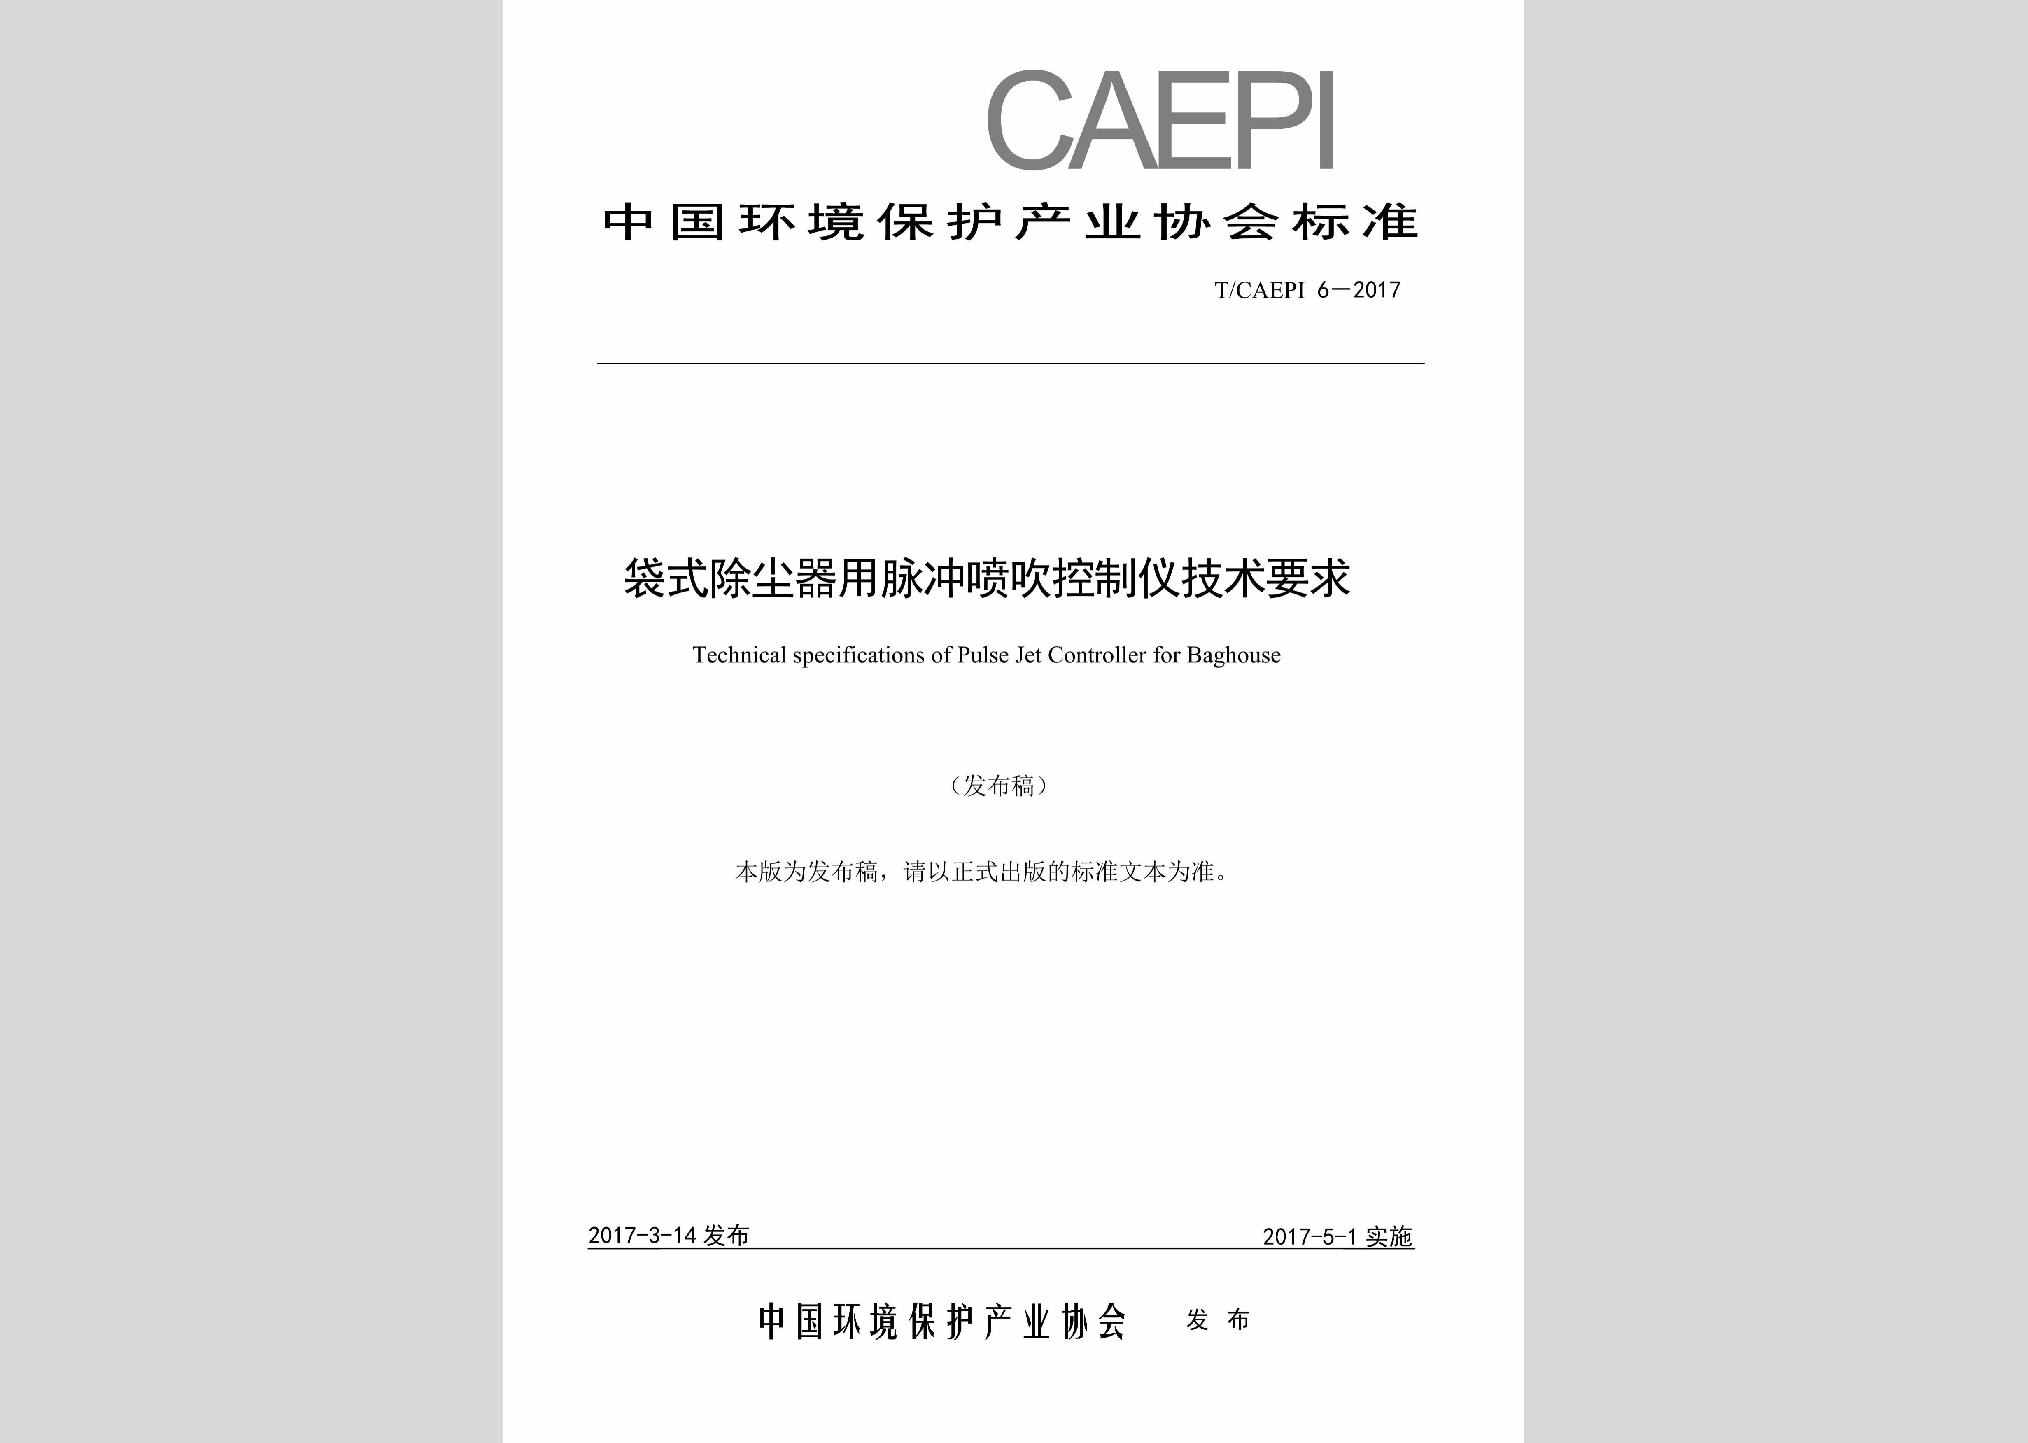 T/CAEPI6-2017：袋式除尘器用脉冲喷吹控制仪技术要求